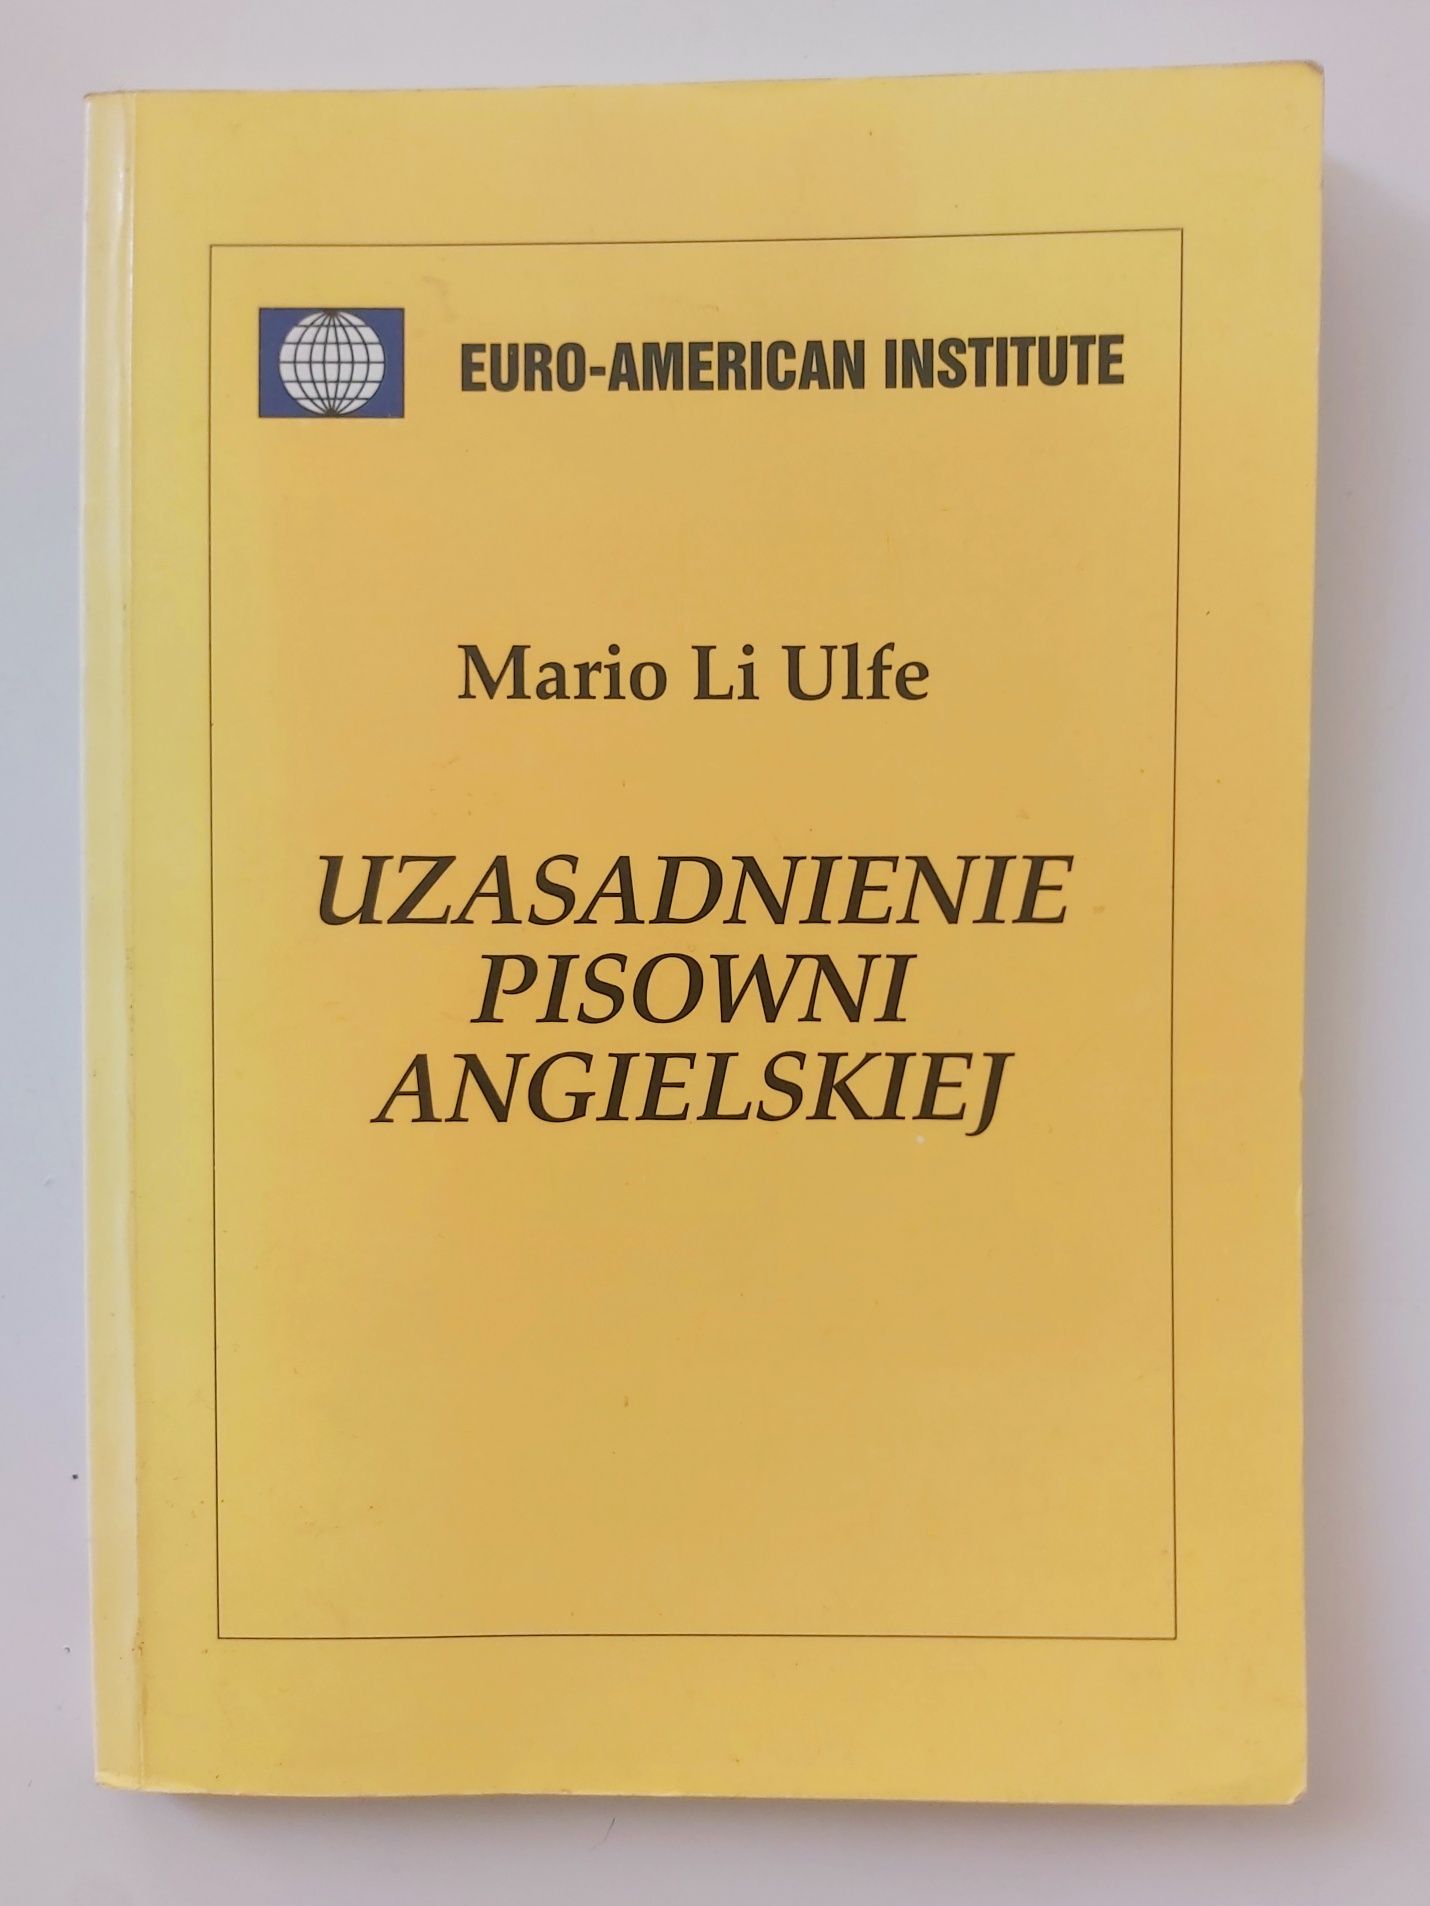 Książka "Uzasadnienie pisowni angielskiej" Mario Li Ulfe